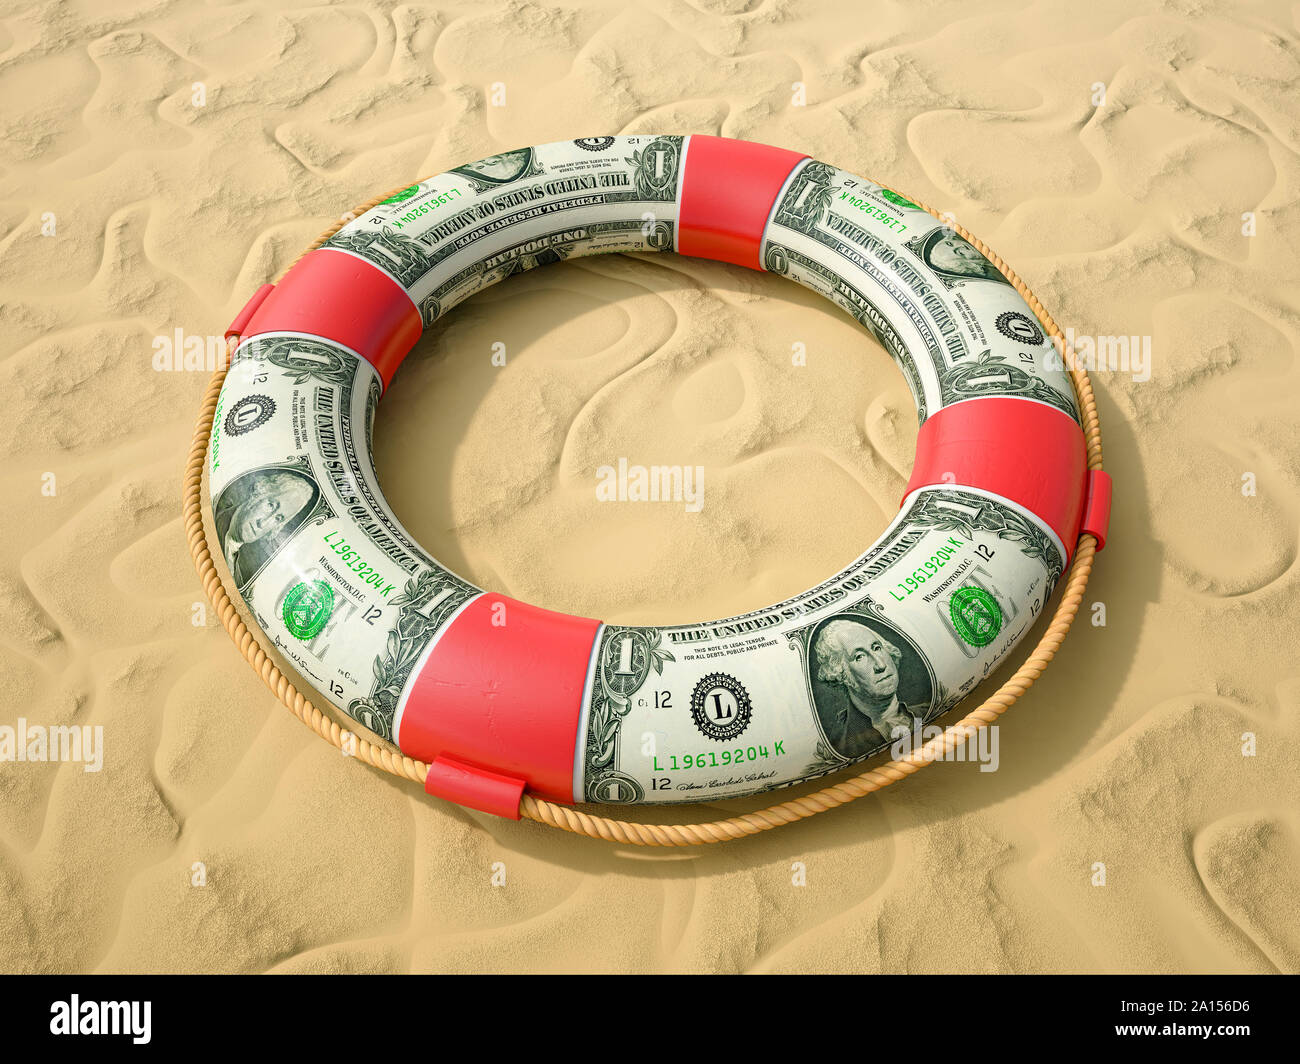 Rettungsring, Leben ring Bewahrer aus US-Dollarnoten auf Sand Stockfoto